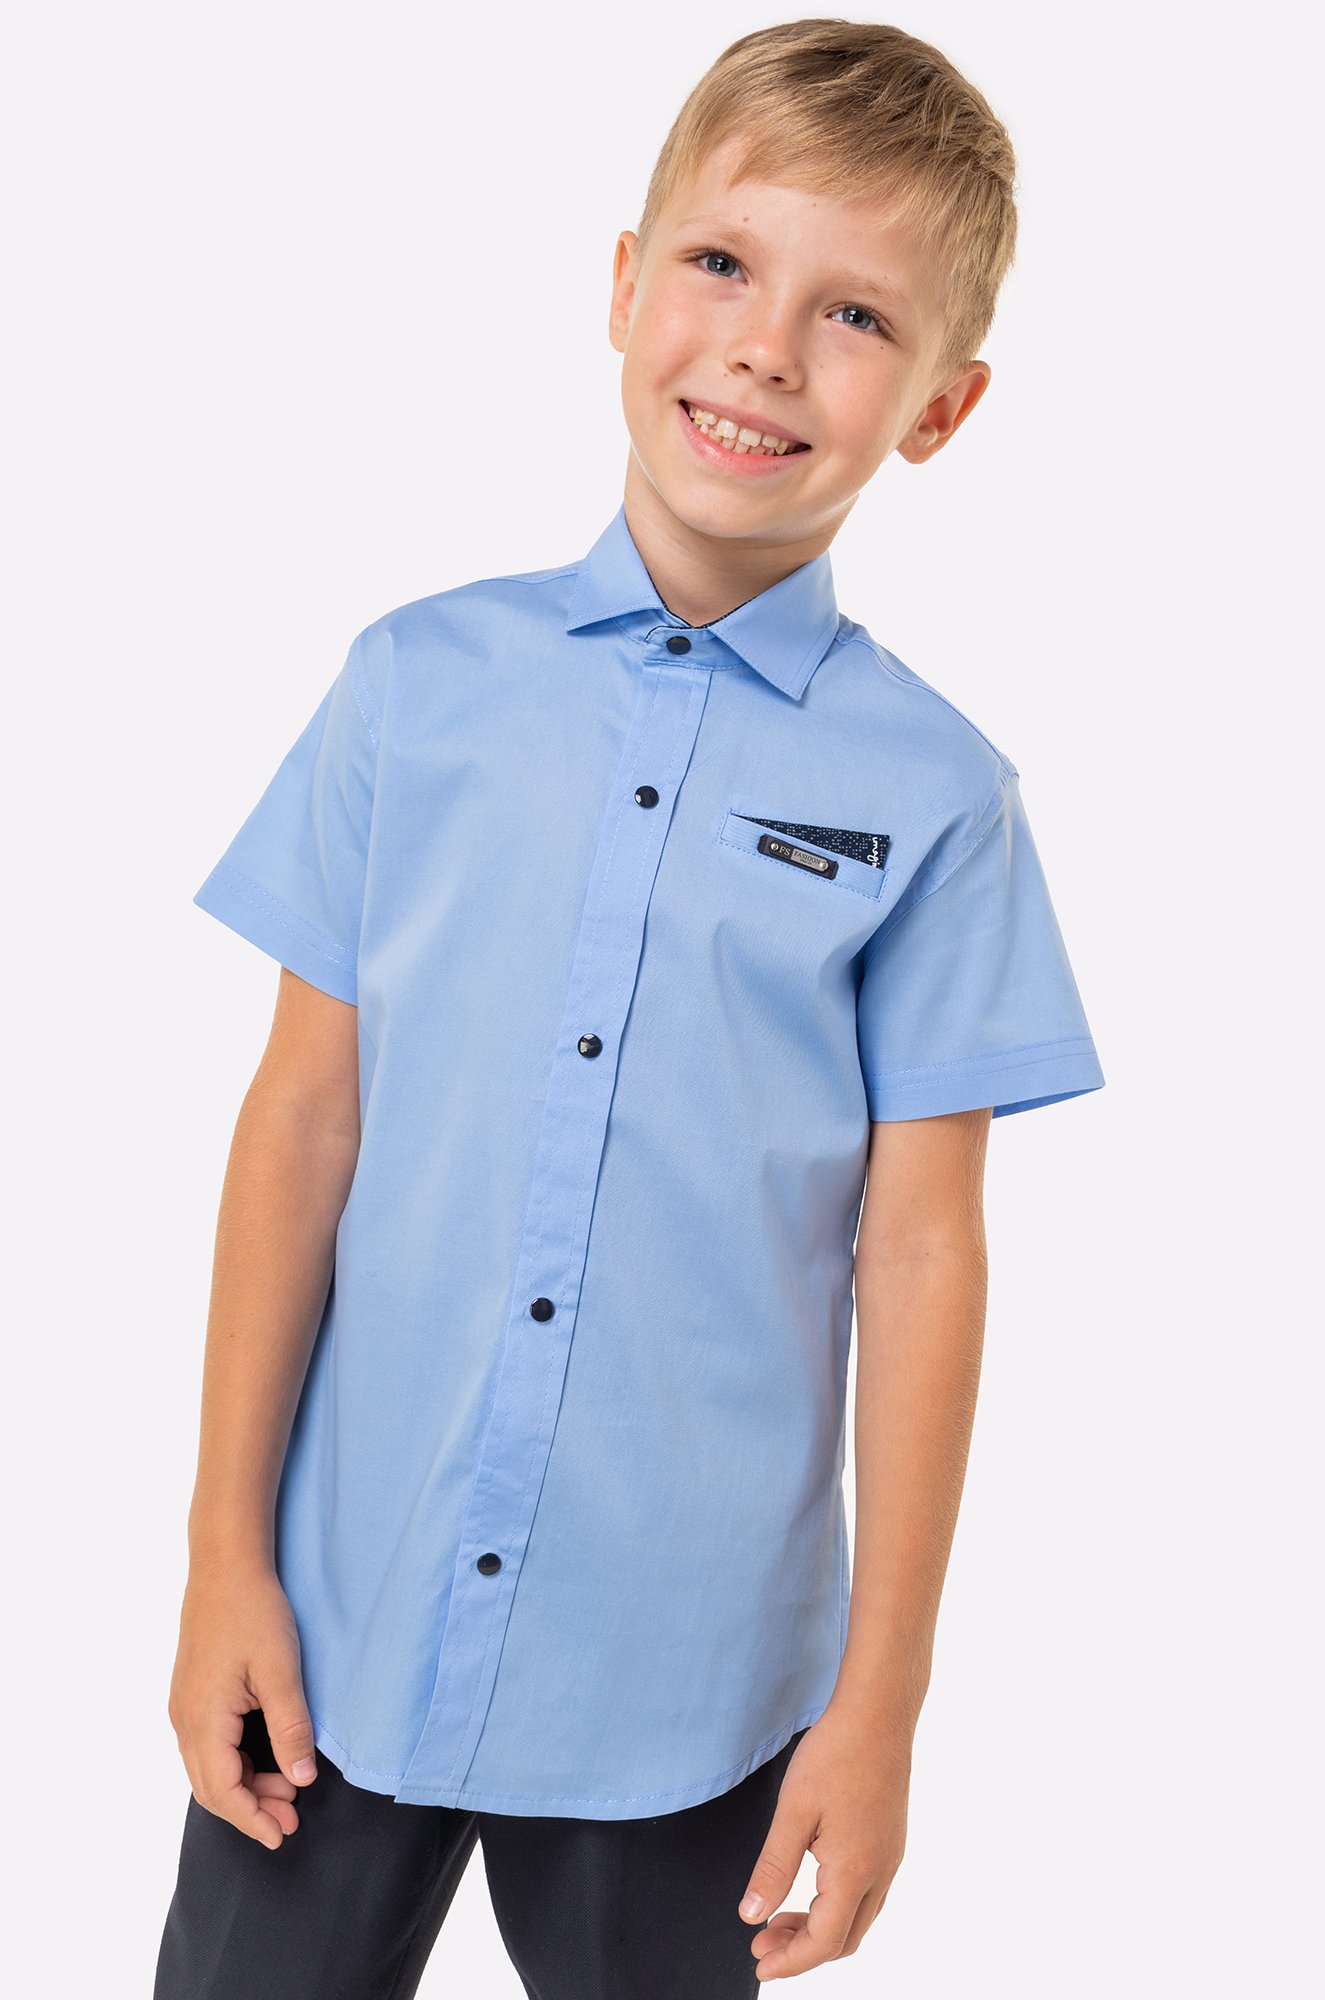 Рубашка для мальчика на кнопках Blueland